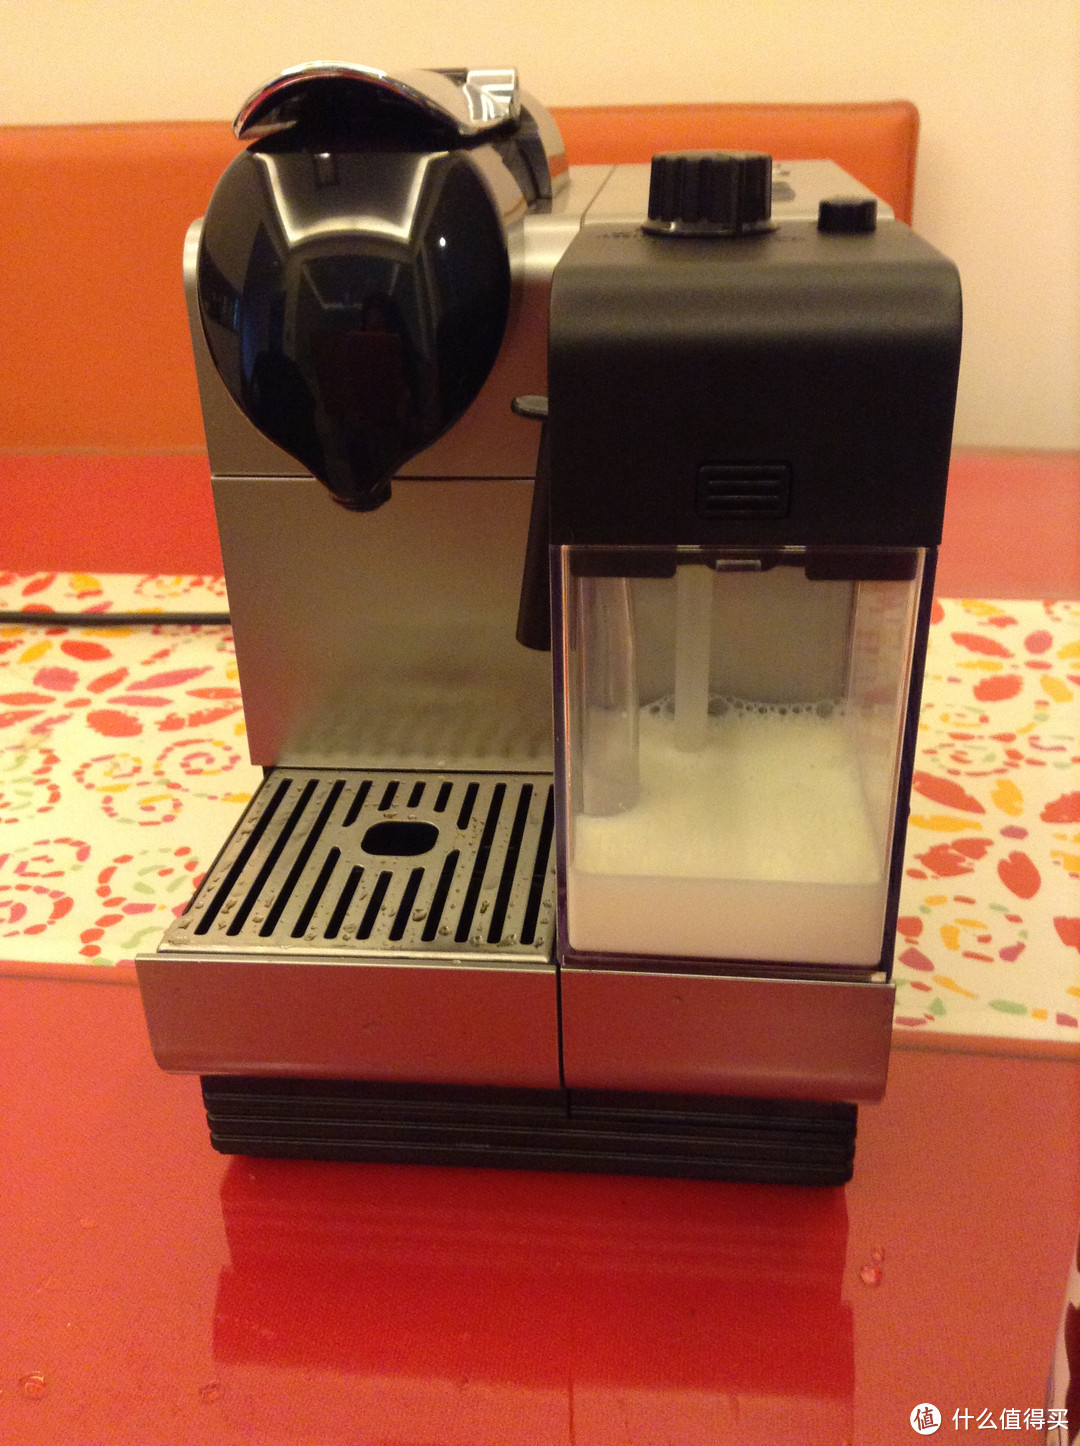 美好的一天从一杯咖啡开始——NESCAFE 雀巢 EN520 胶囊咖啡机